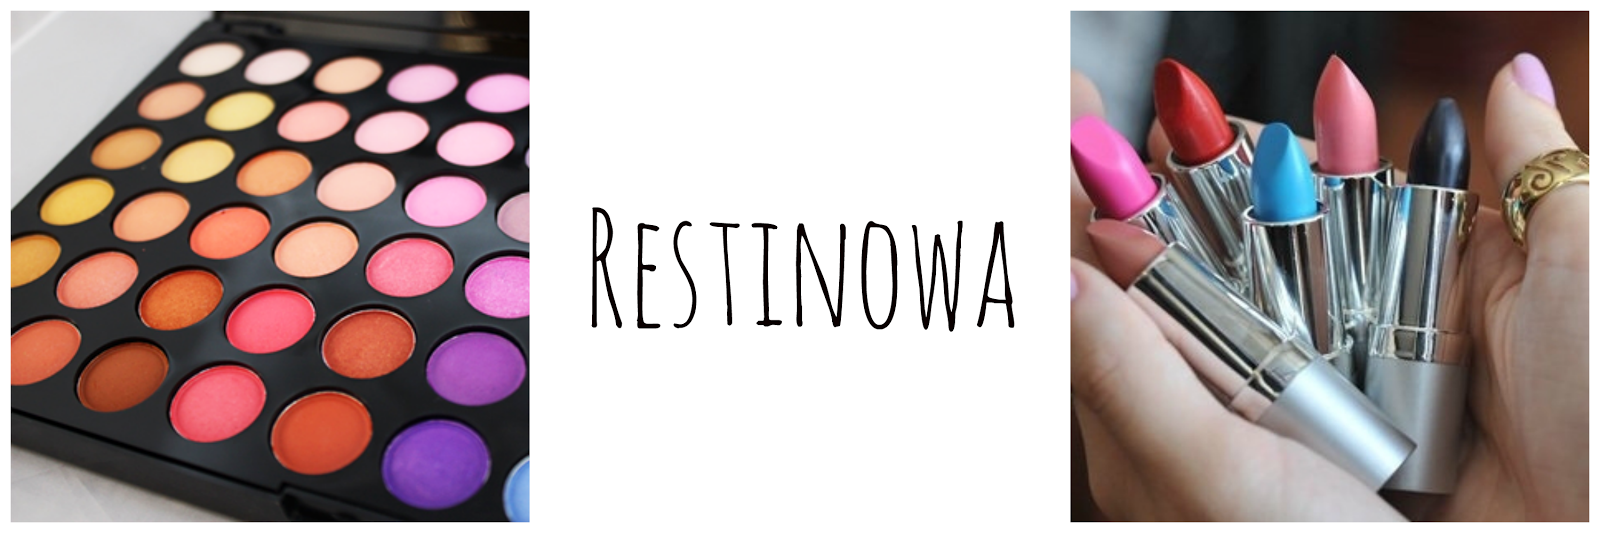                       Restinowa